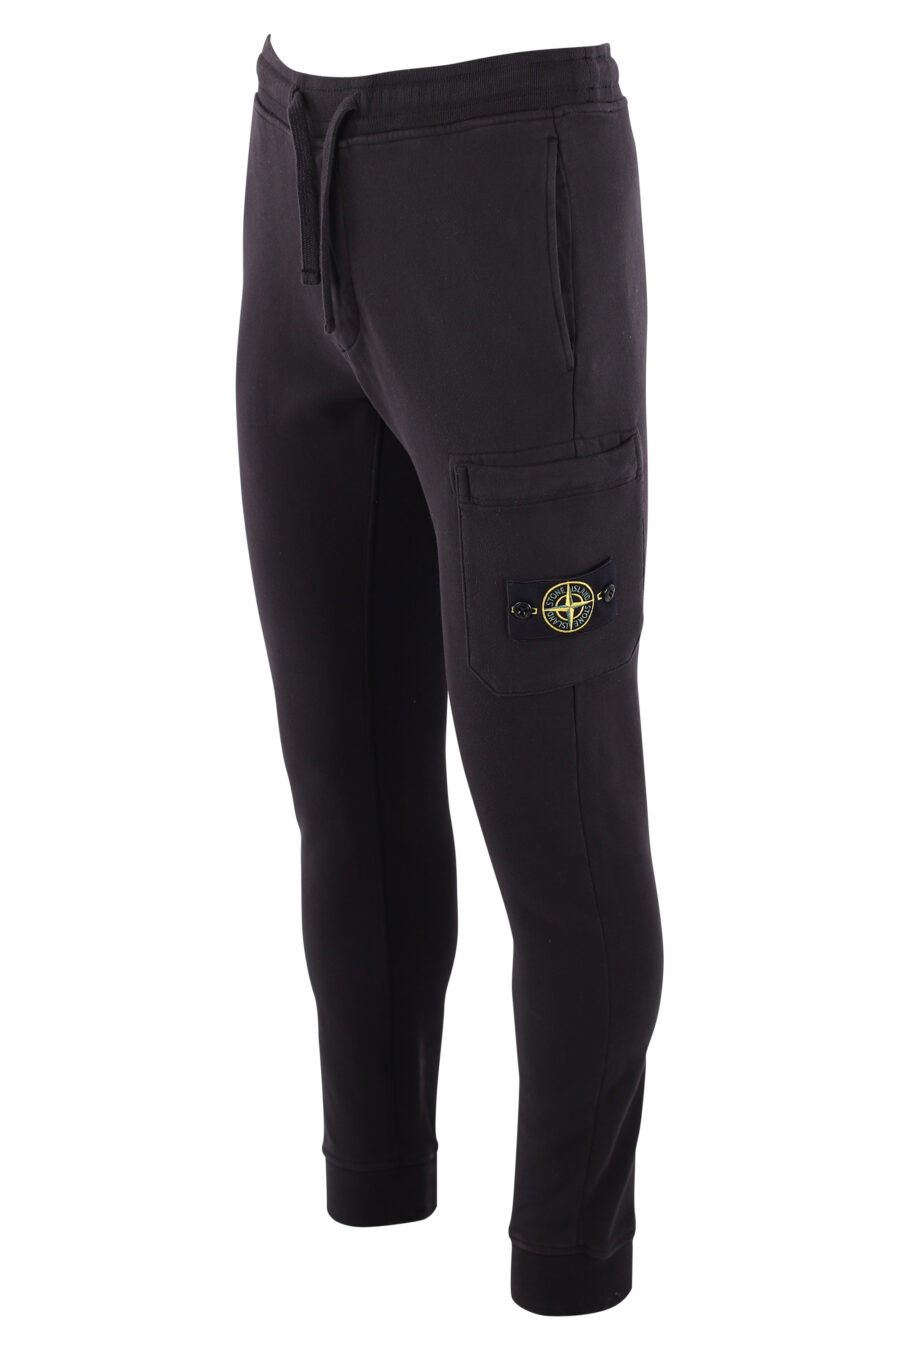 Pantalón de chándal negro con parche lateral - IMG 3215